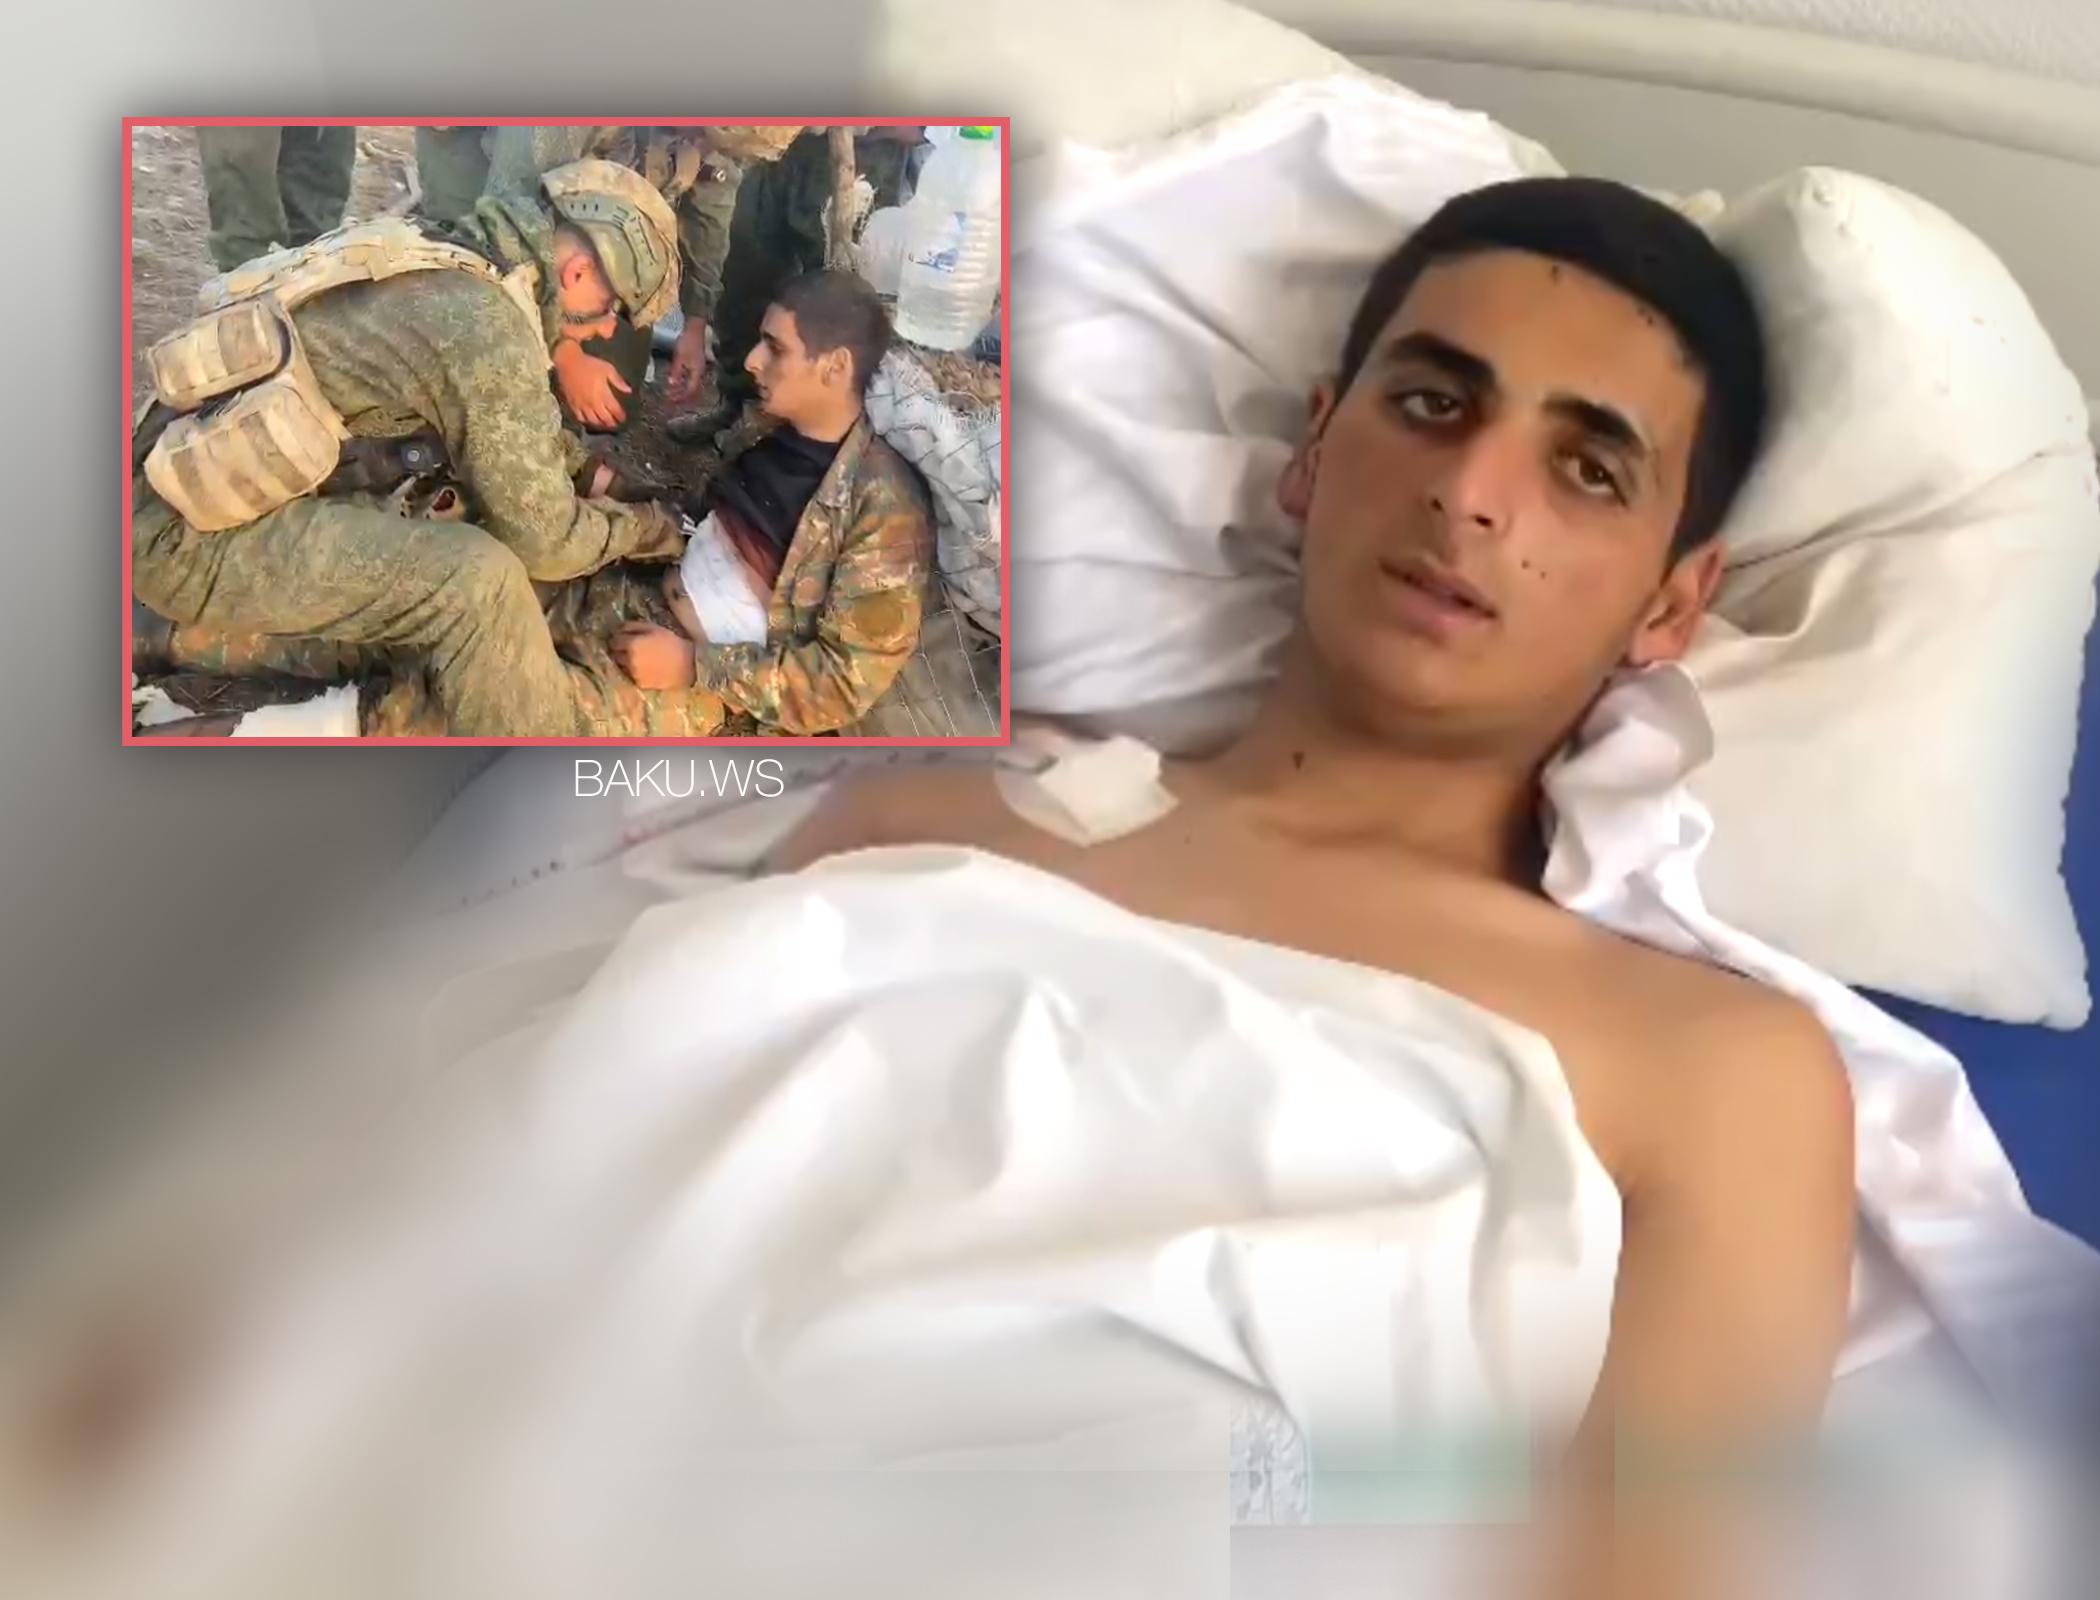 Азербайджанский военный навестил раненого армянского солдата, которому спас жизнь - ВИДЕО